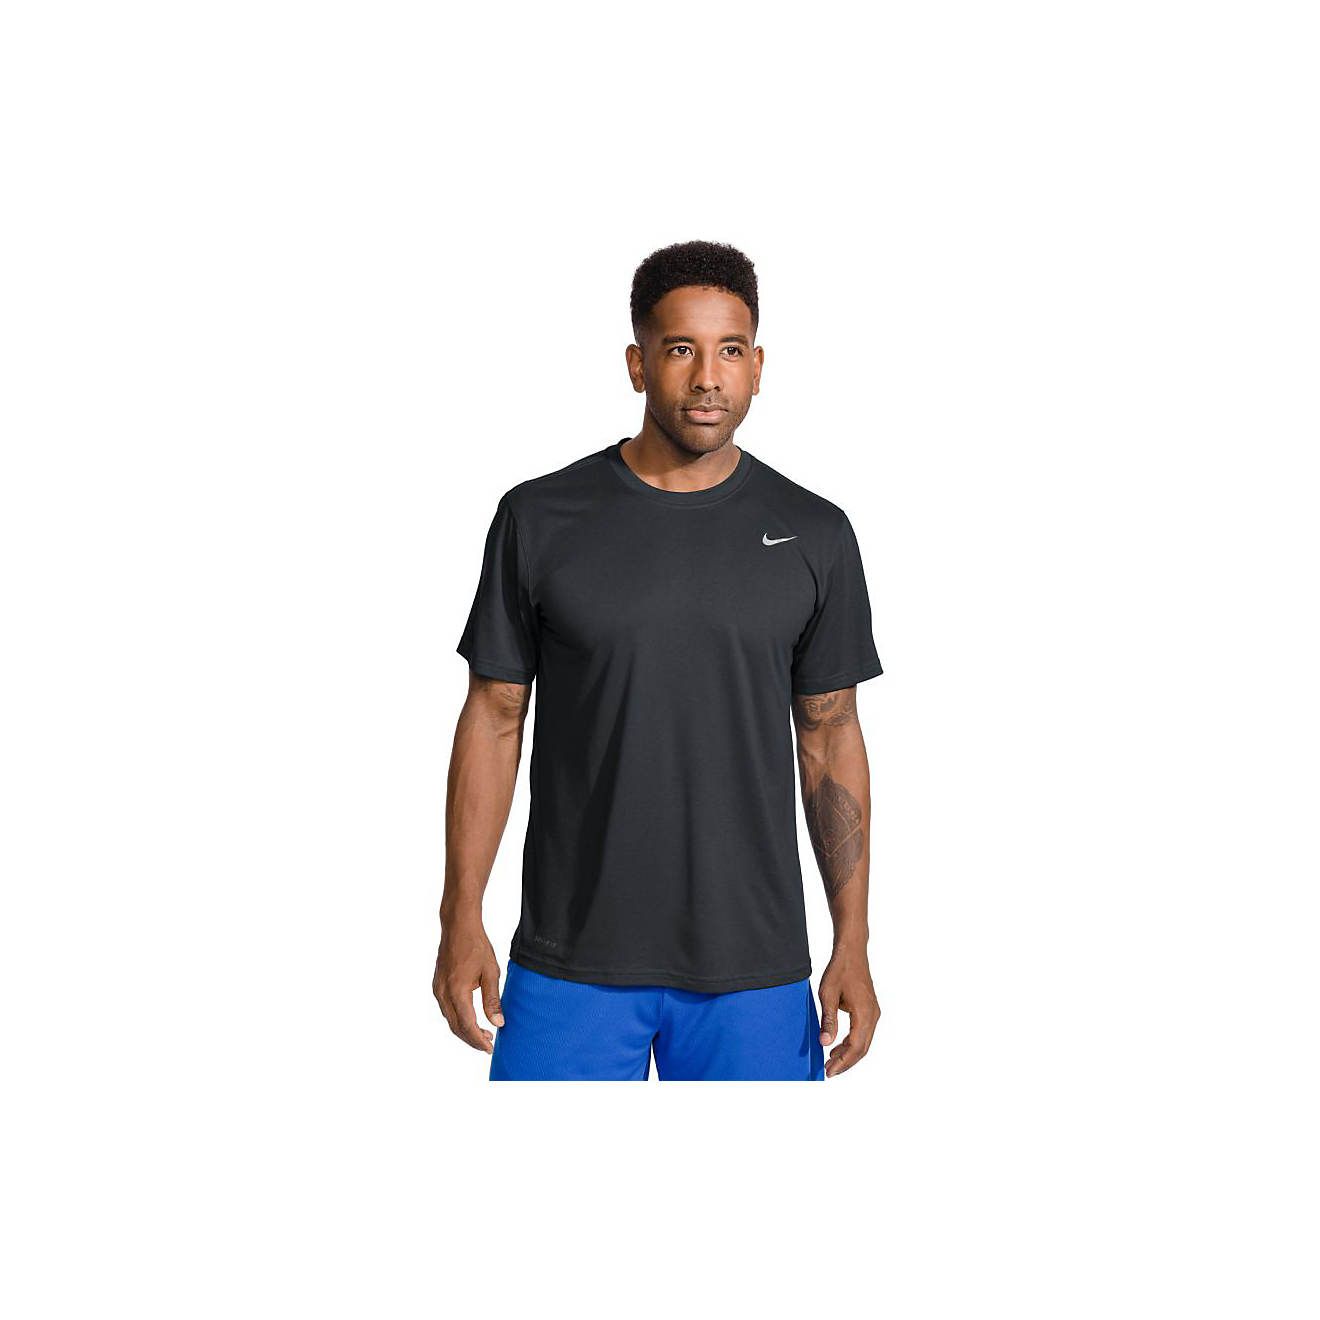 Nike Men's Legend 2.0 Short Sleeve T-shirt | Academy | Academy Sports + Outdoors